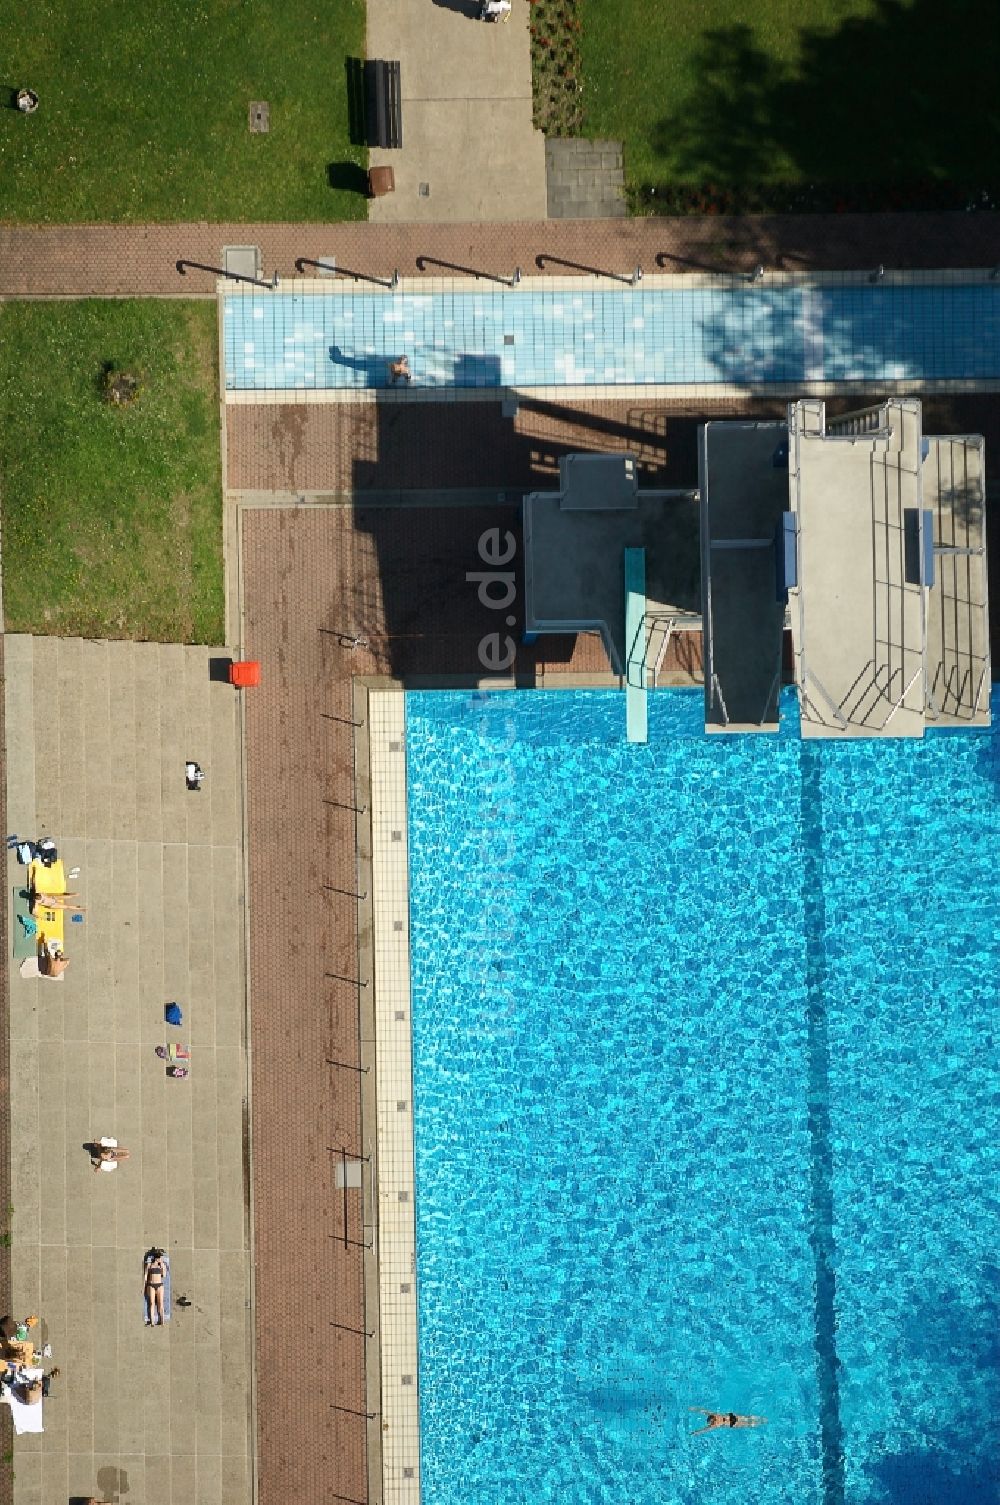 Luftbild Köln - Schwimmbecken des Freibades Stadionbad in Köln im Bundesland Nordrhein-Westfalen, Deutschland